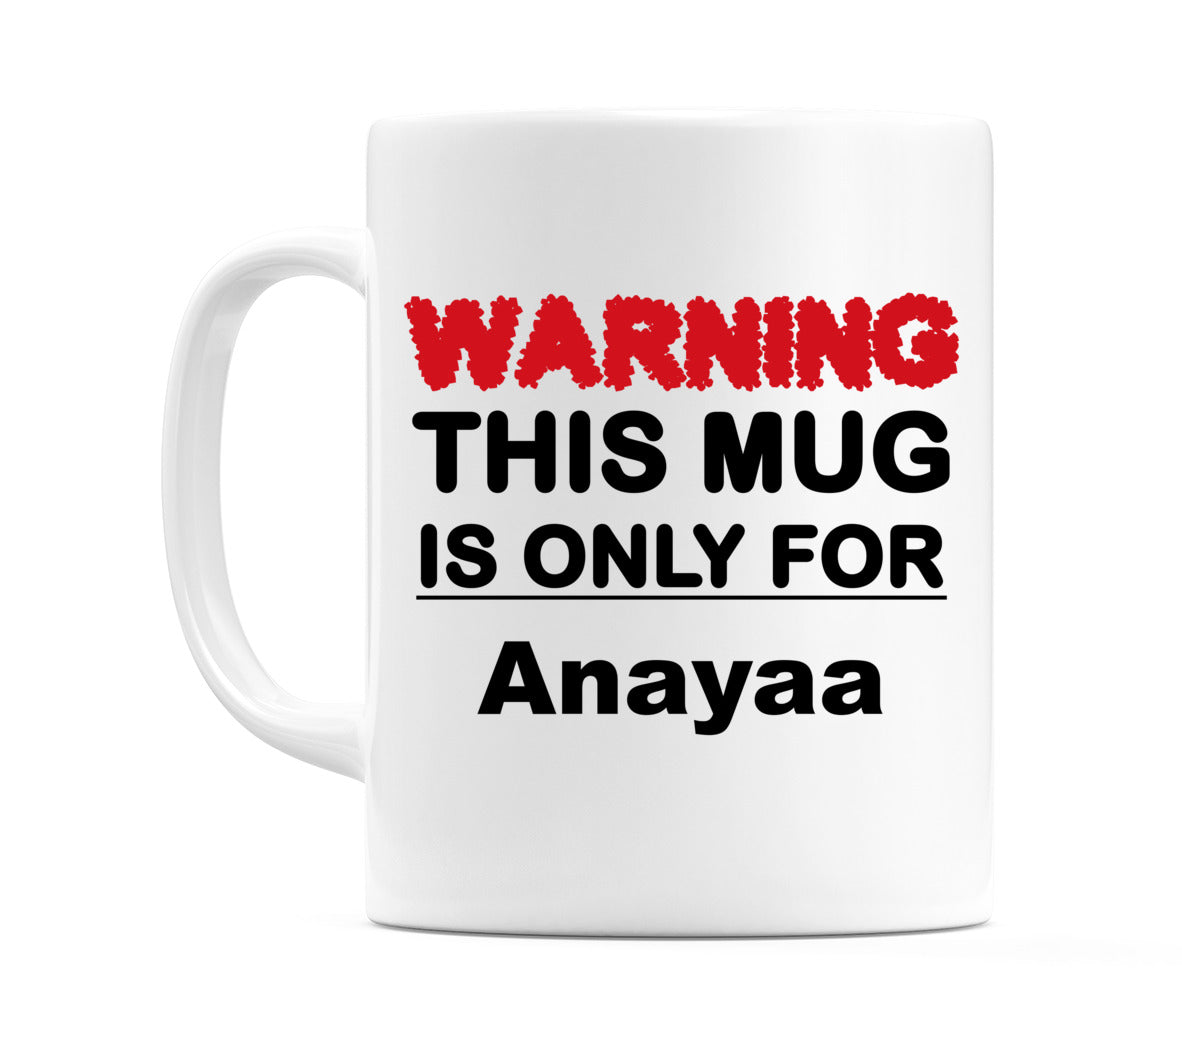 Warning This Mug is ONLY for Anayaa Mug